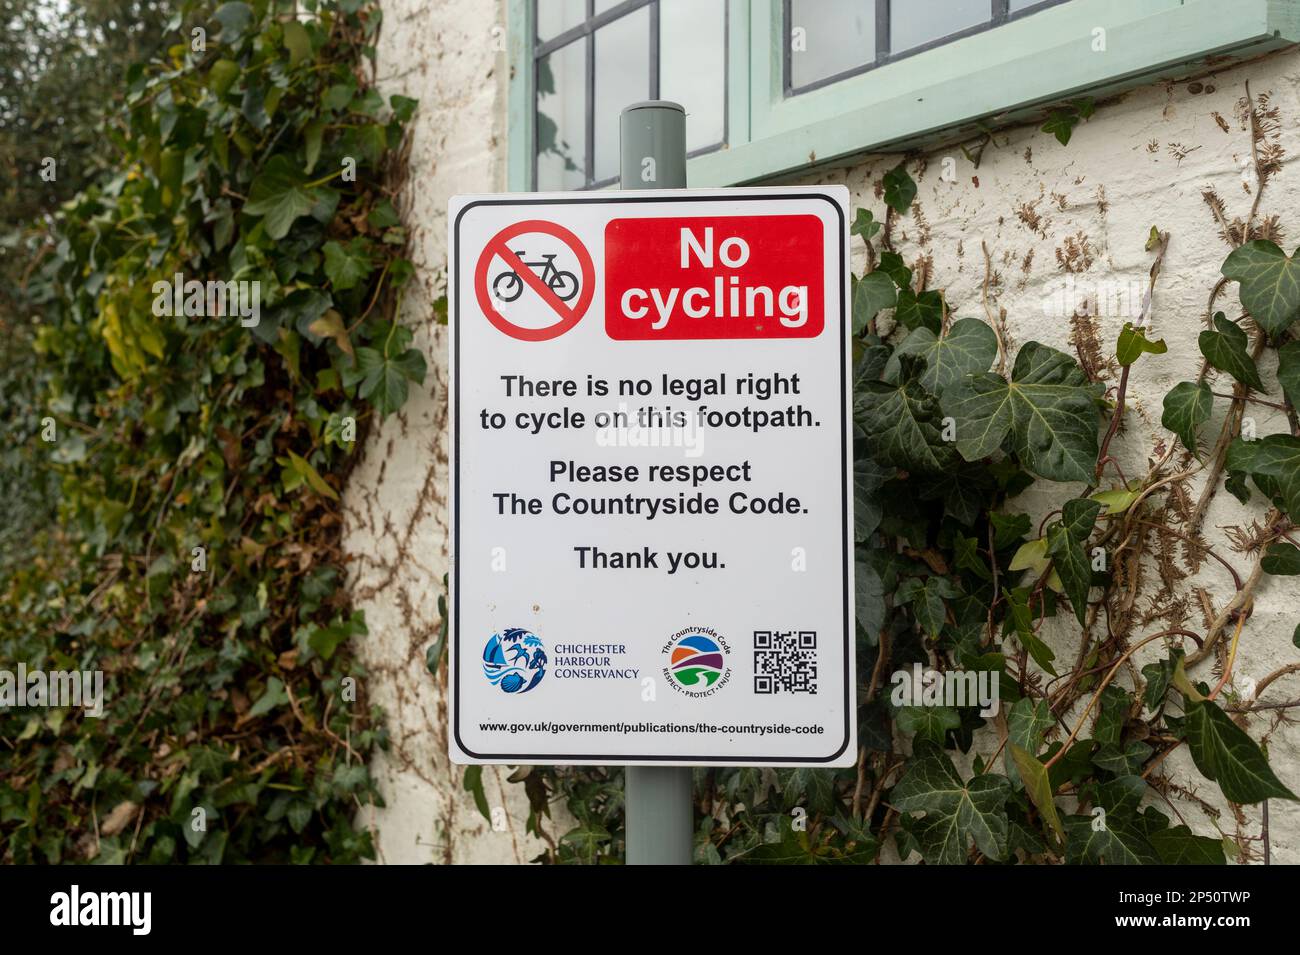 Panneau d'avertissement indiquant qu'il n'y a pas de droit légal de faire du vélo sur le sentier. Banque D'Images